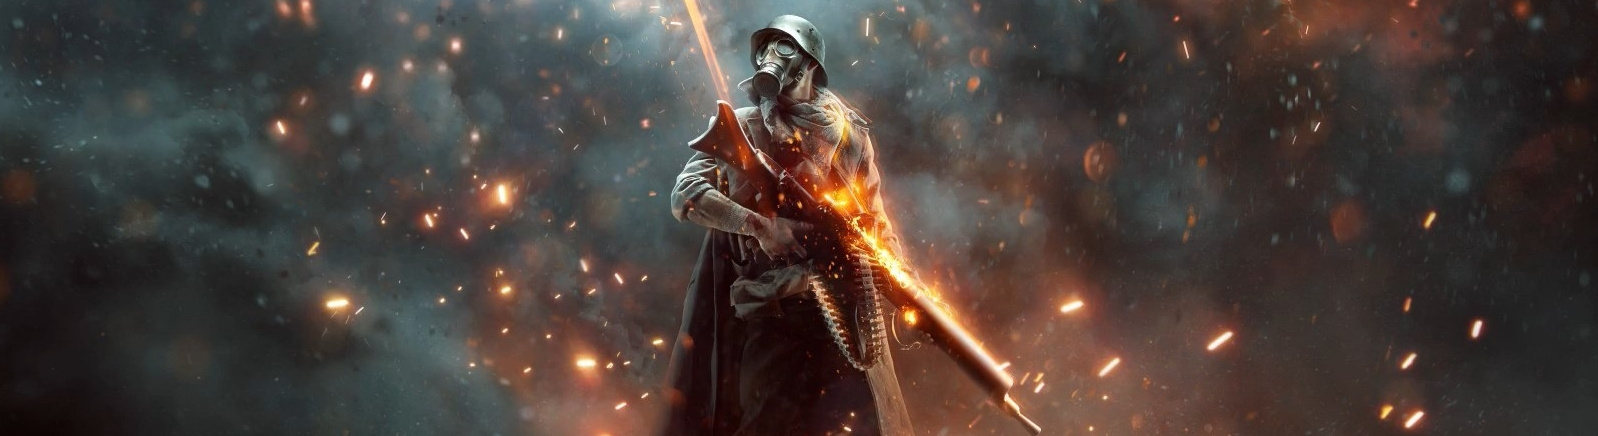 Дата выхода Battlefield 1: Apocalypse (Battlefield 1: Апокалипсис)  на PC, PS4 и Xbox One в России и во всем мире